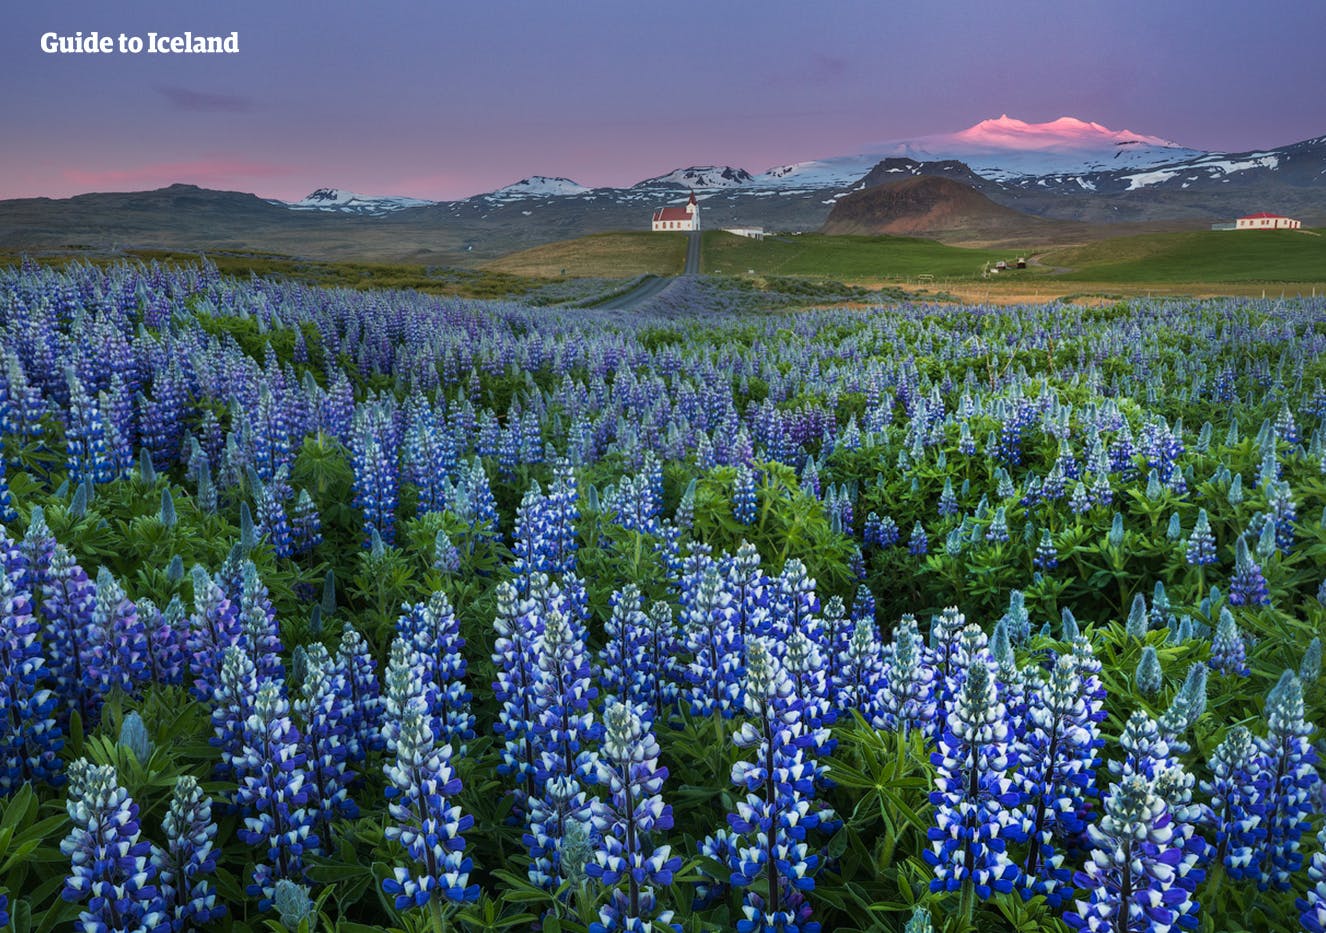 La Península de Snæfellsnes se cubre de bellos lupinos en flor durante el verano.